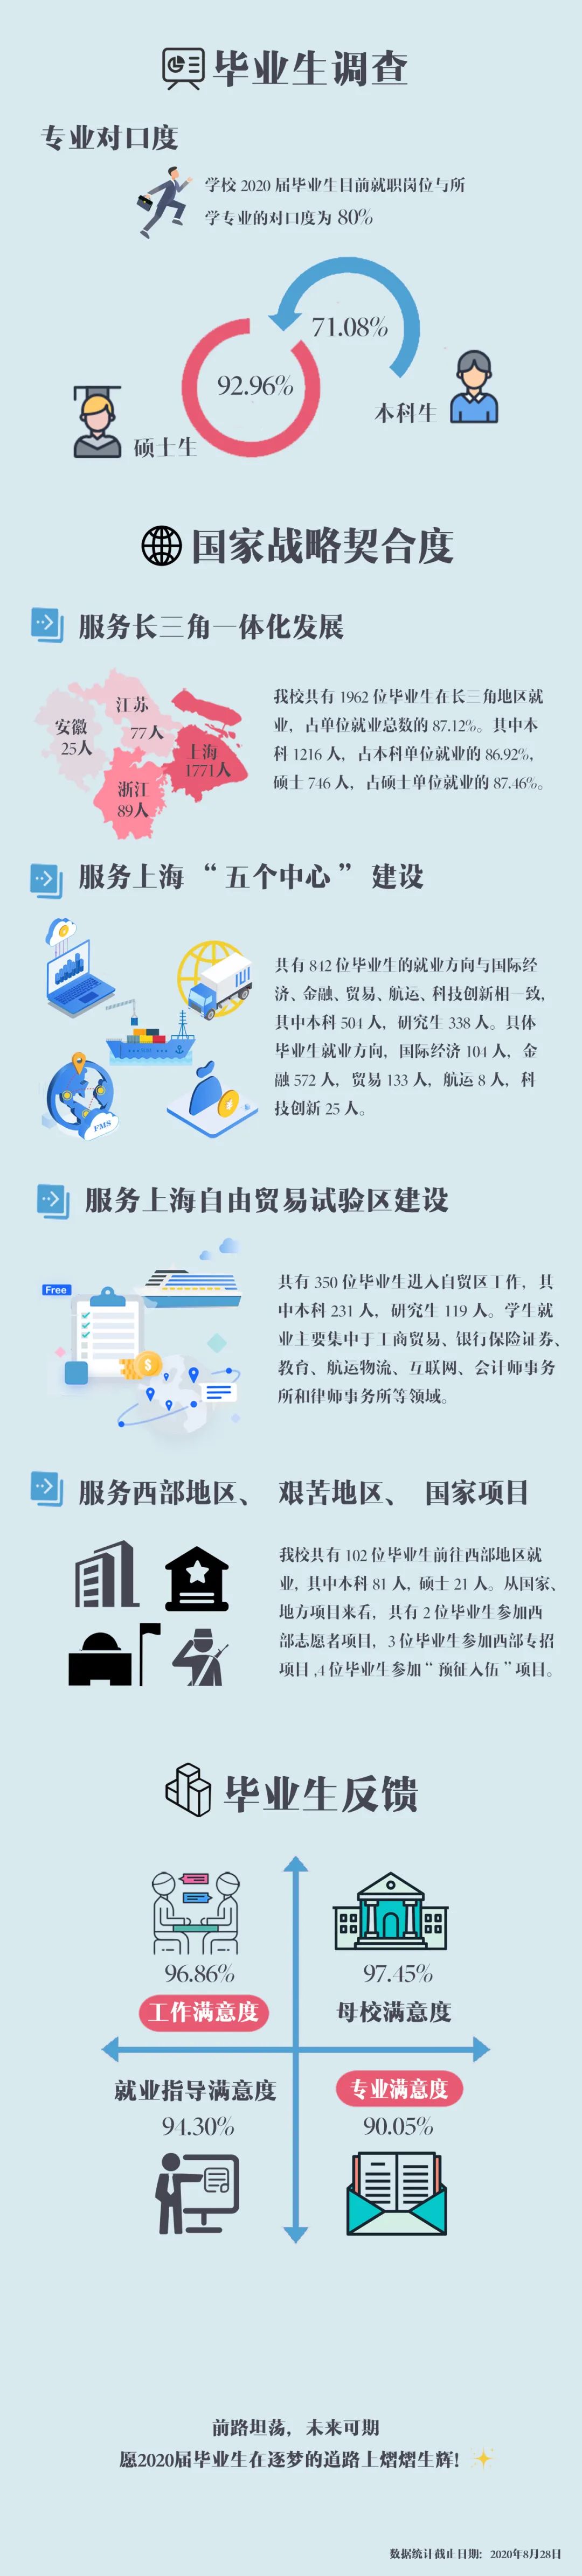 上海对外经贸大学2020届毕业生就业质量报告